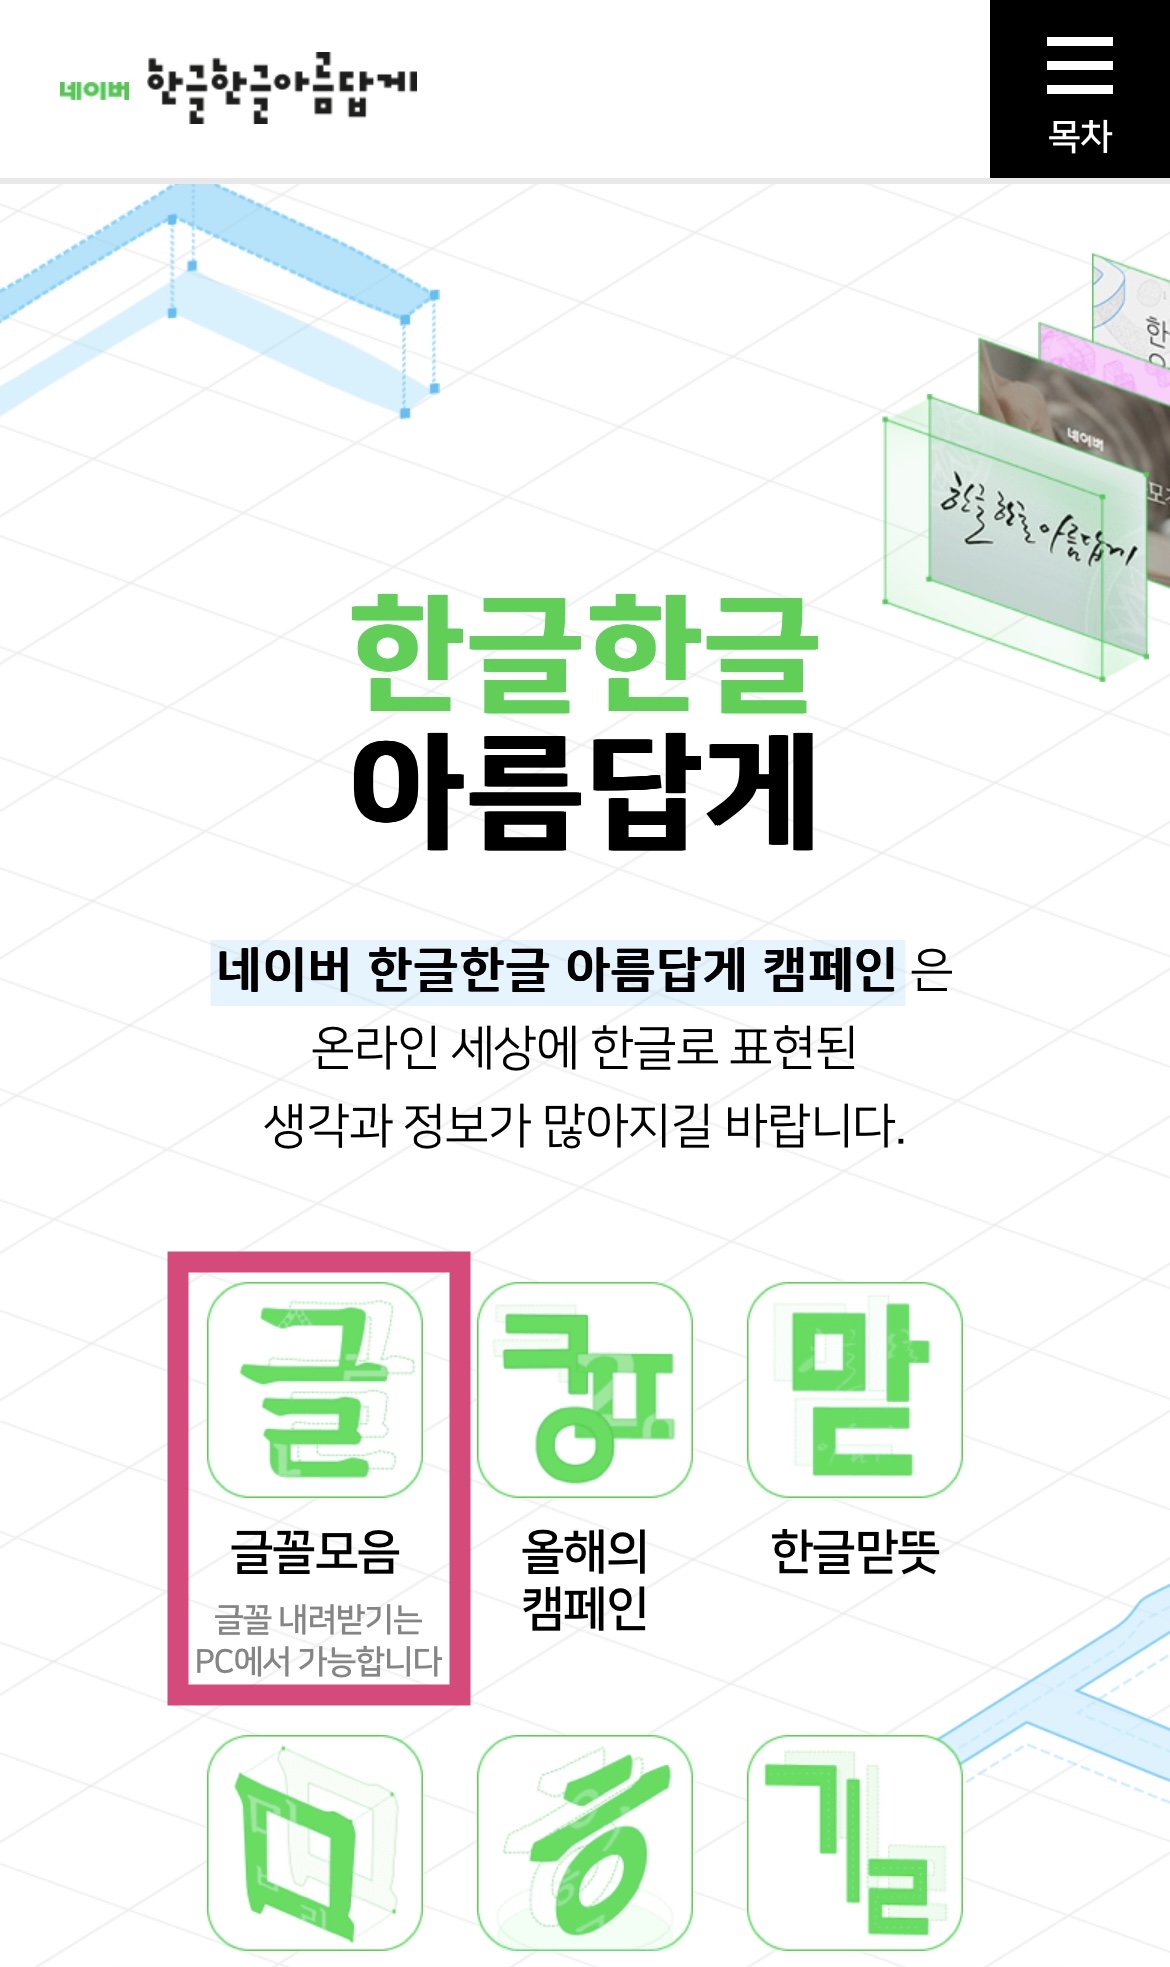 カカオトークの韓国語フォントを「好きなフォント」に変更する方法